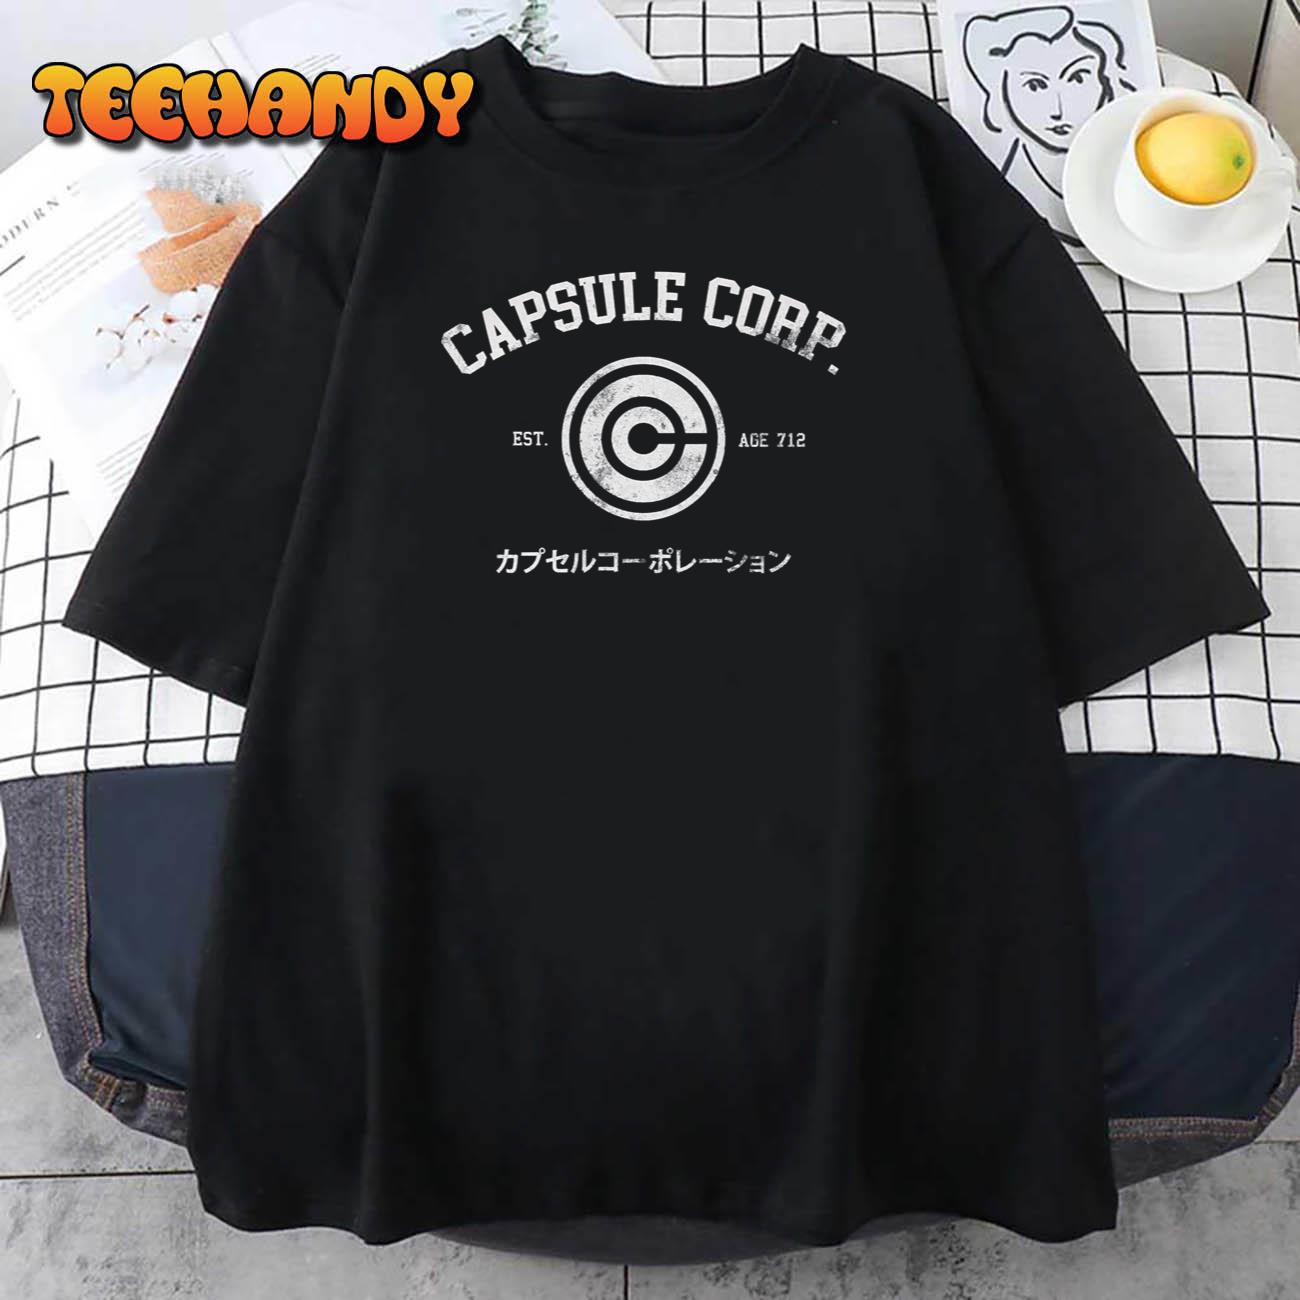 Capsule Corp Est Age 712 Dragon Ball Unisex T Shirt